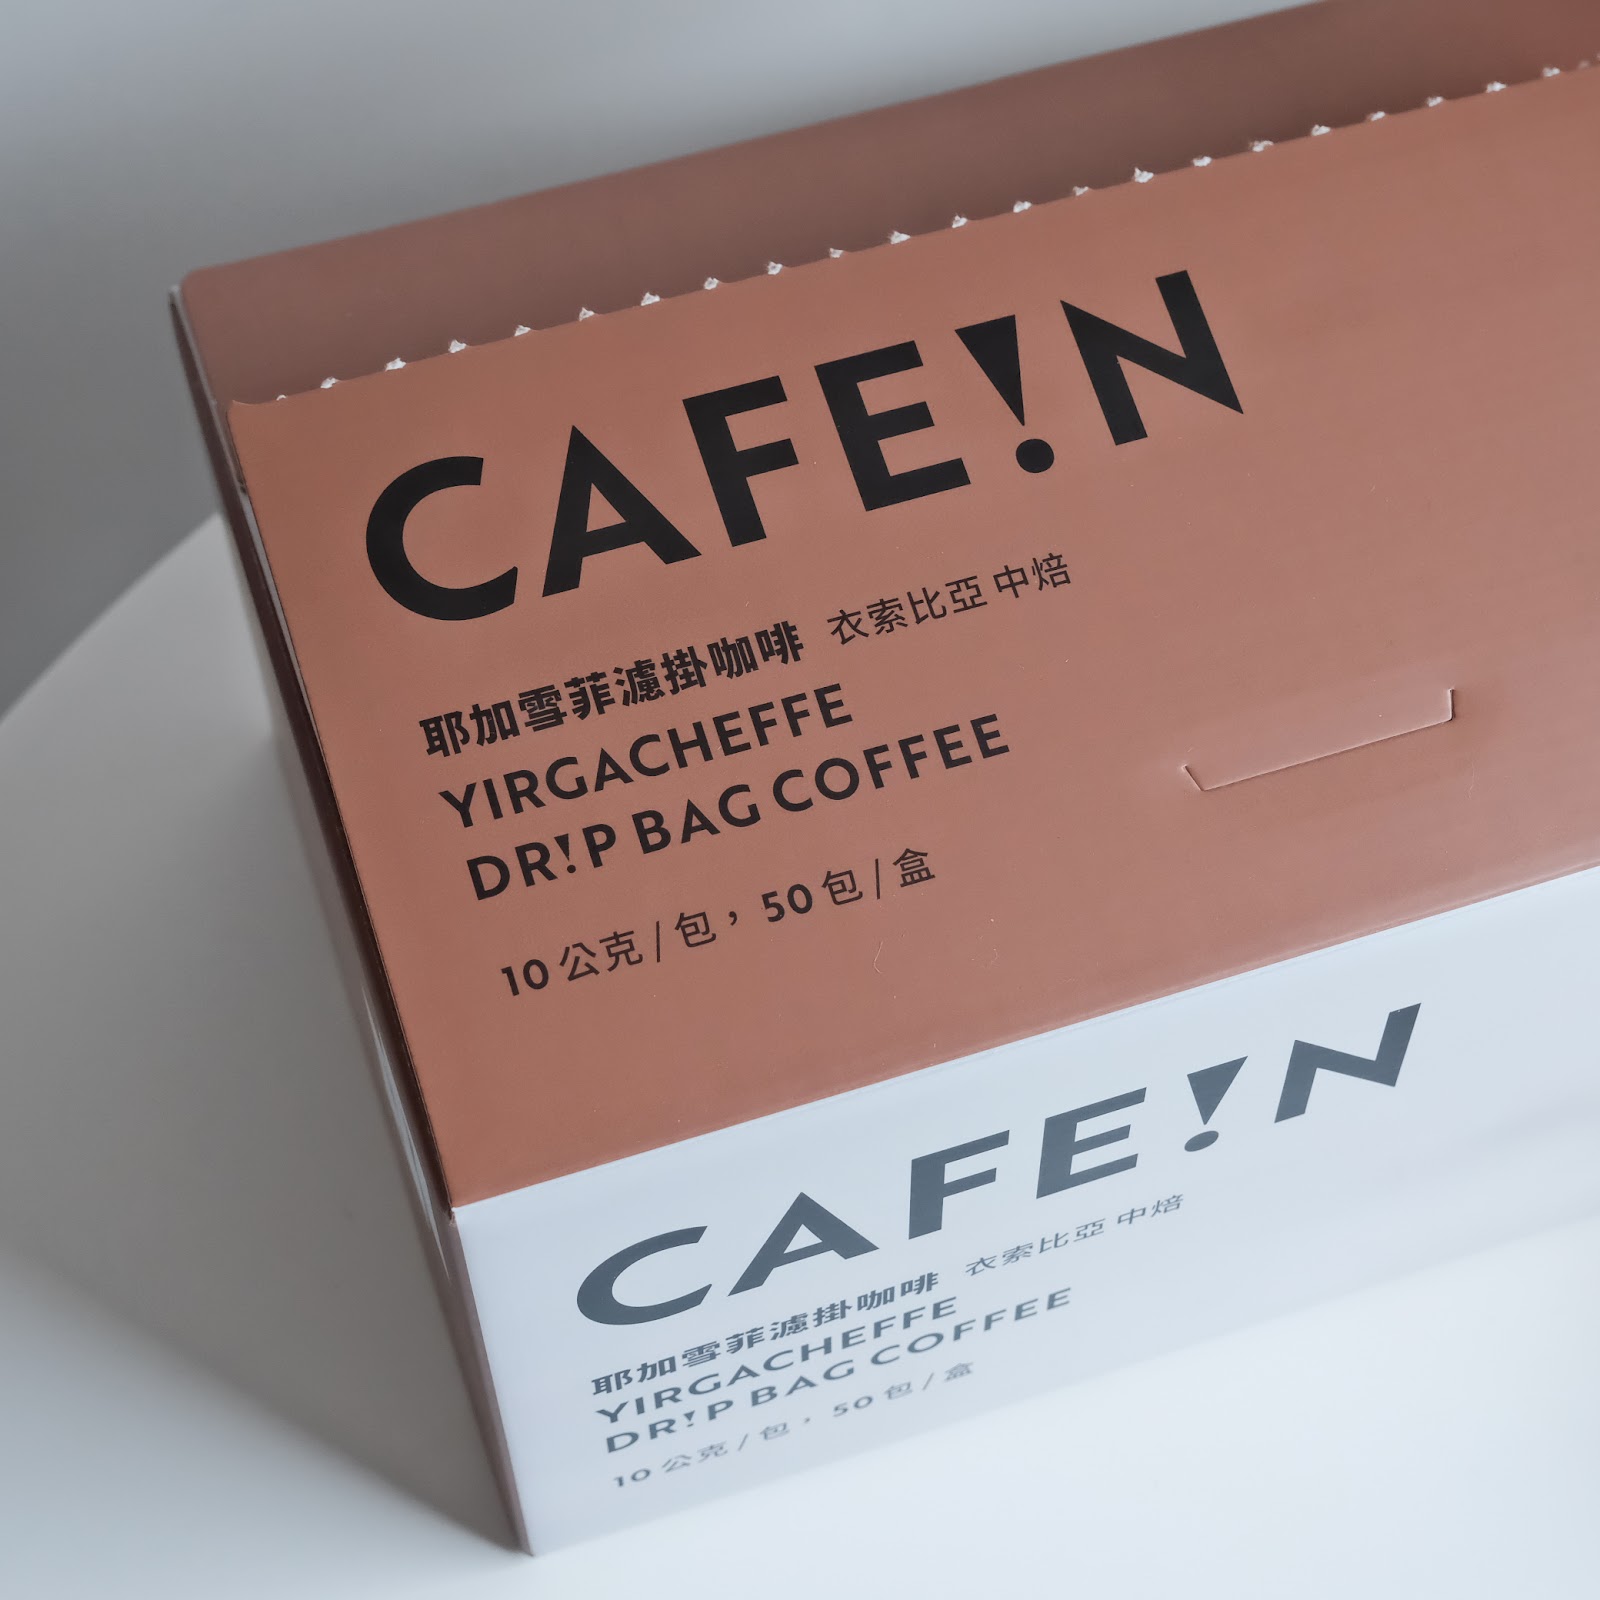 【濾掛咖啡推薦】CAFE!N 耶加雪菲濾掛咖啡～全台最大咖啡